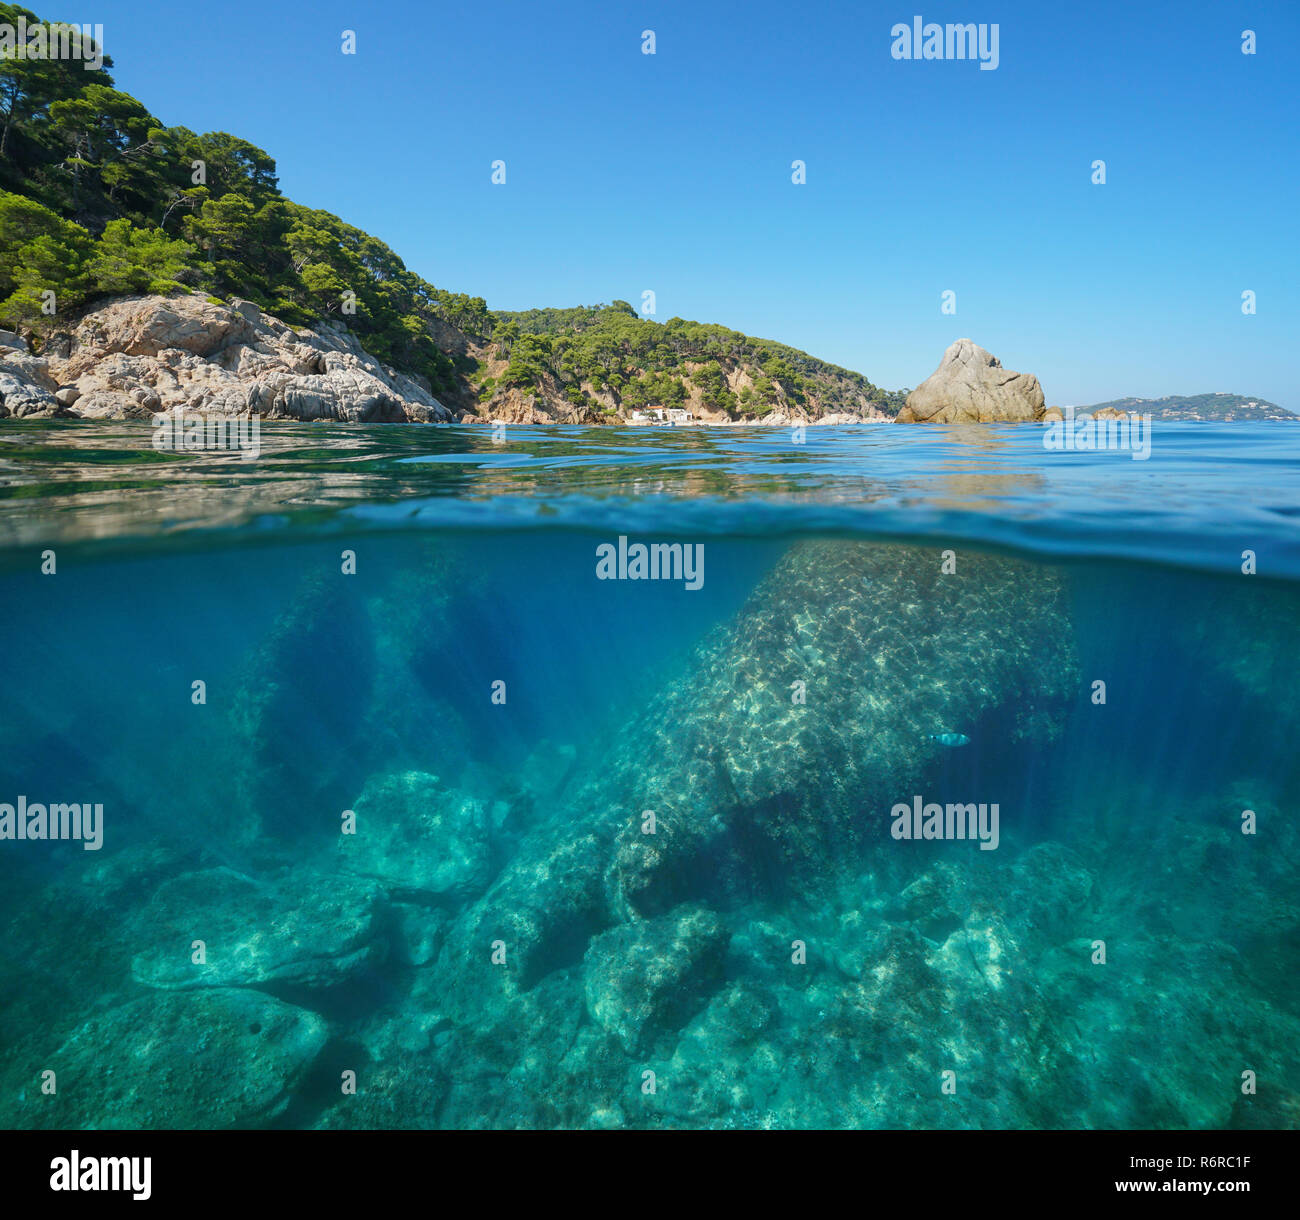 Côte rocheuse avec de gros rochers sous-marins, split voir la moitié au-dessus et au-dessous de la surface de l'eau, Méditerranée, Palamos, Costa Brava, Espagne Banque D'Images